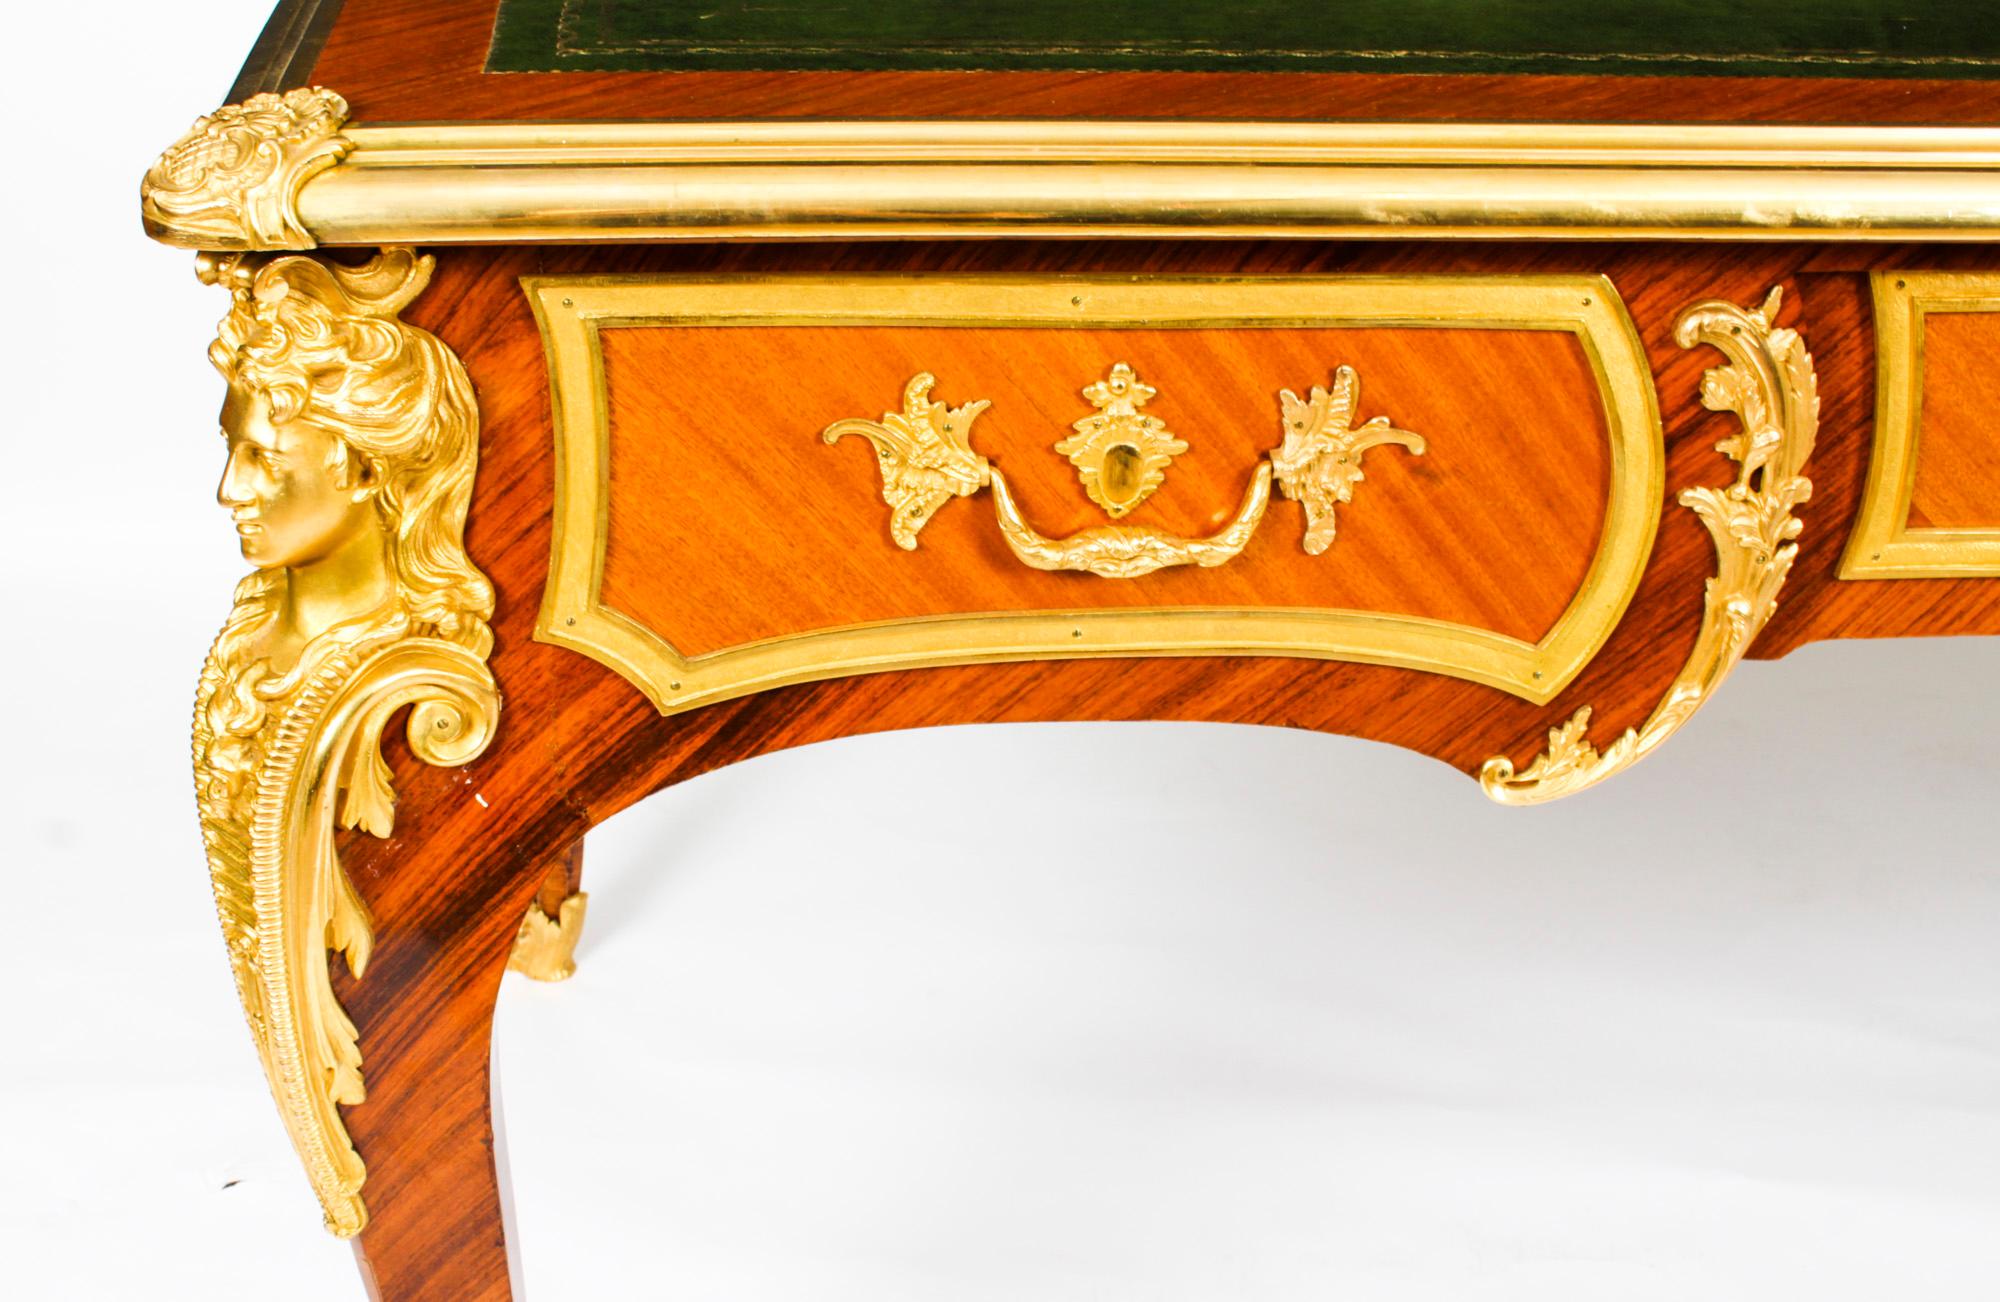 Antique French Louis Revival Ormolu Bureau Plat Desk, 19th C For Sale 2